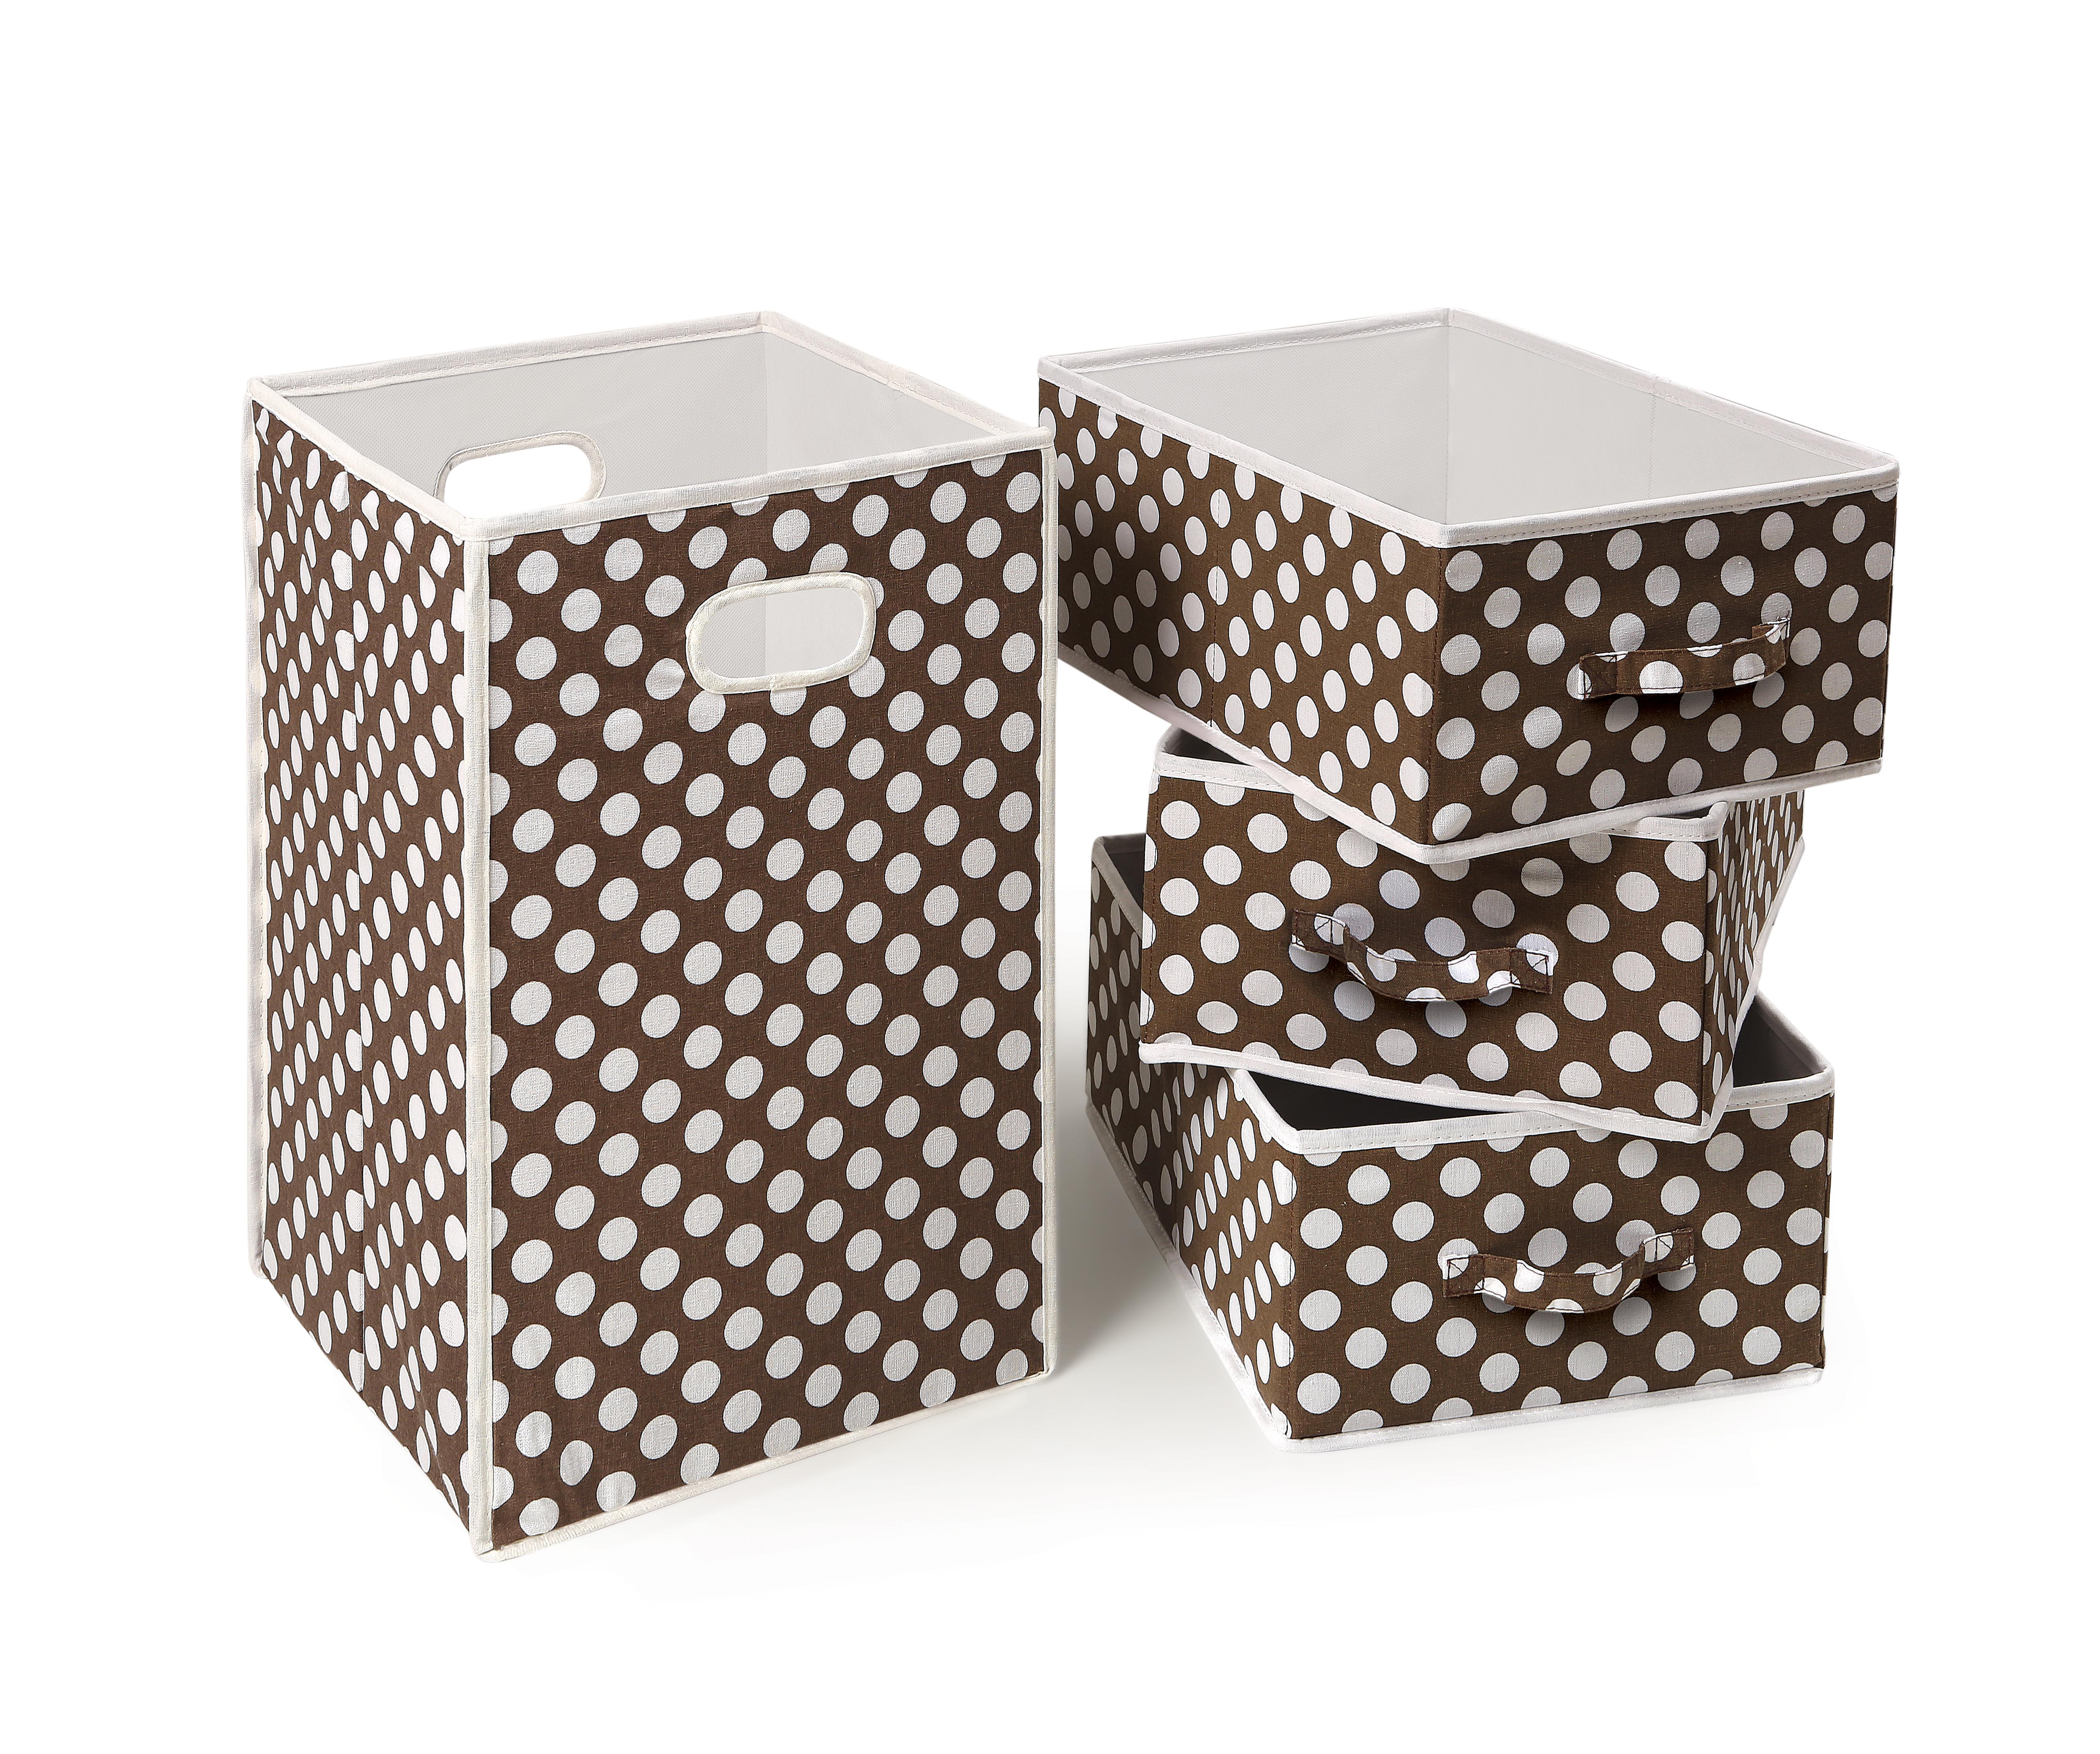 Folding Hamper and 3 Basket Set - Brown Polka Dot